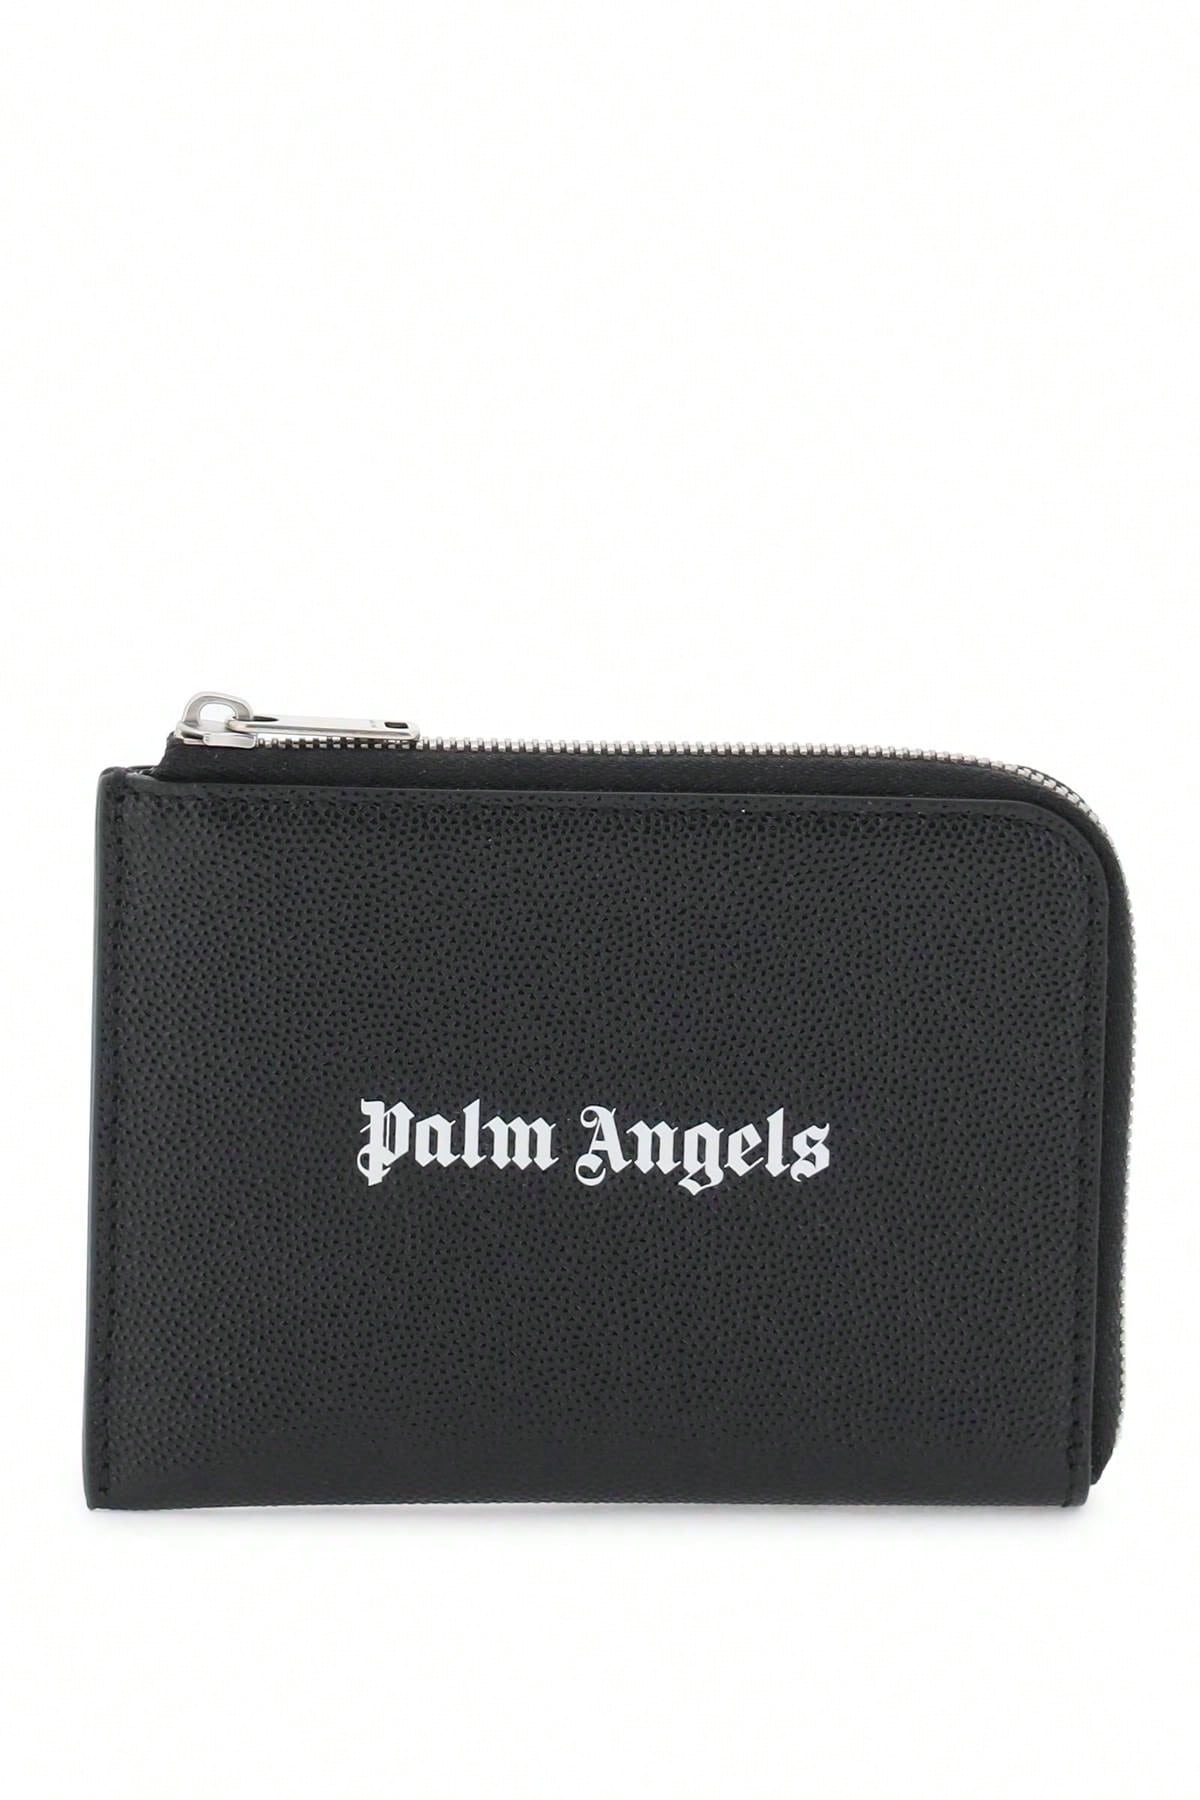 Palm Angels Миниатюрная сумка Palm Angels с выдвижным картхолдером, черный визитница с черным логотипом palm angels цвет black optical white